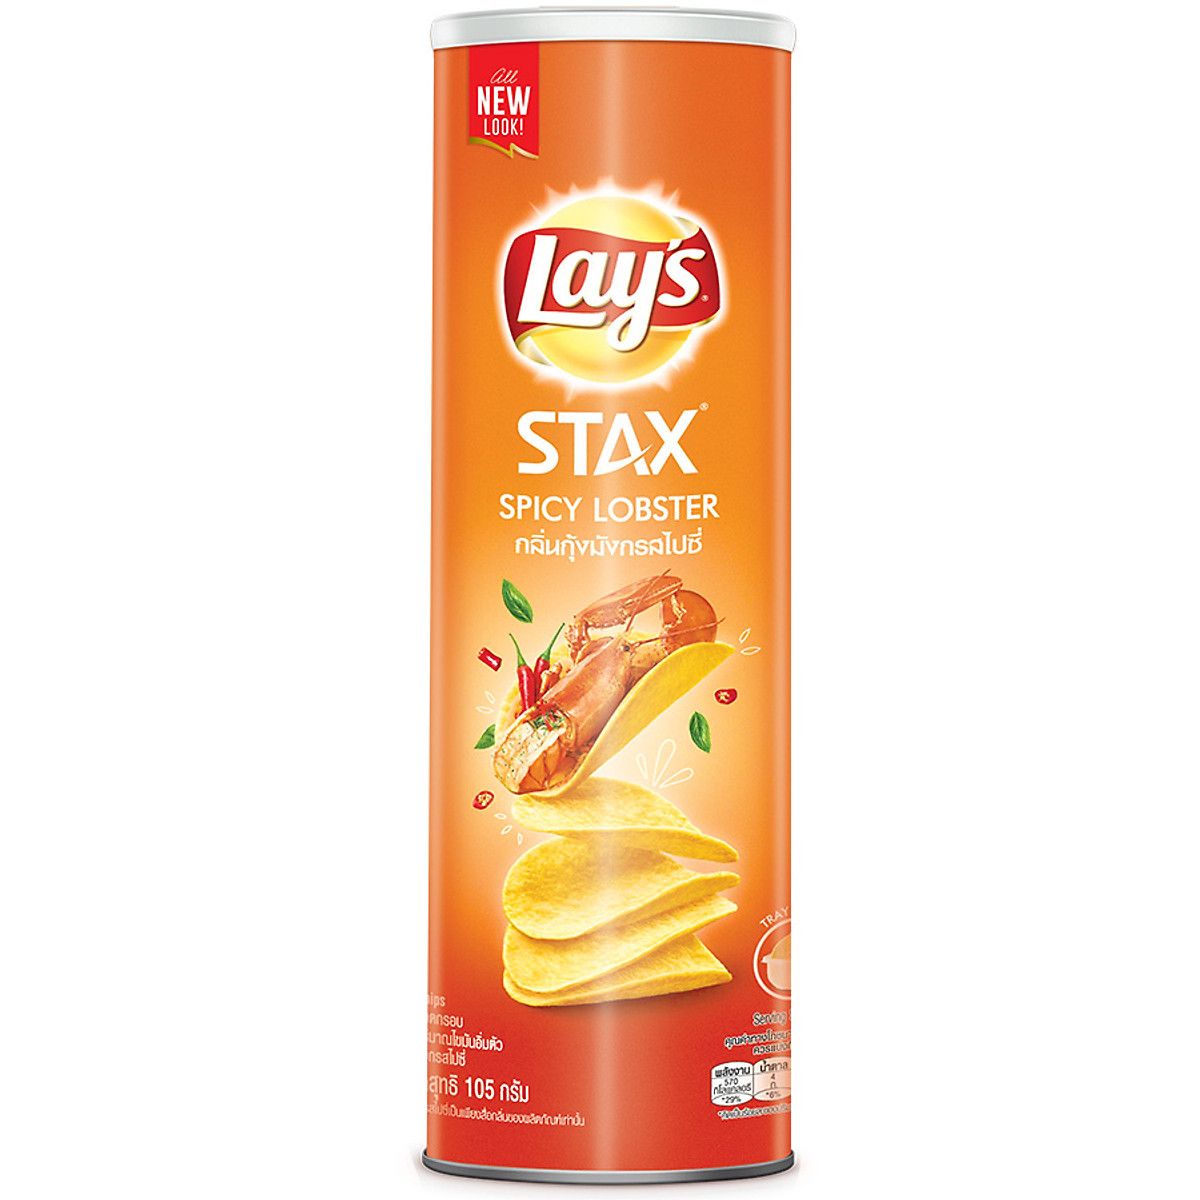  Snack Lays Stax khoai tây tôm hùm cay 100gr*16 